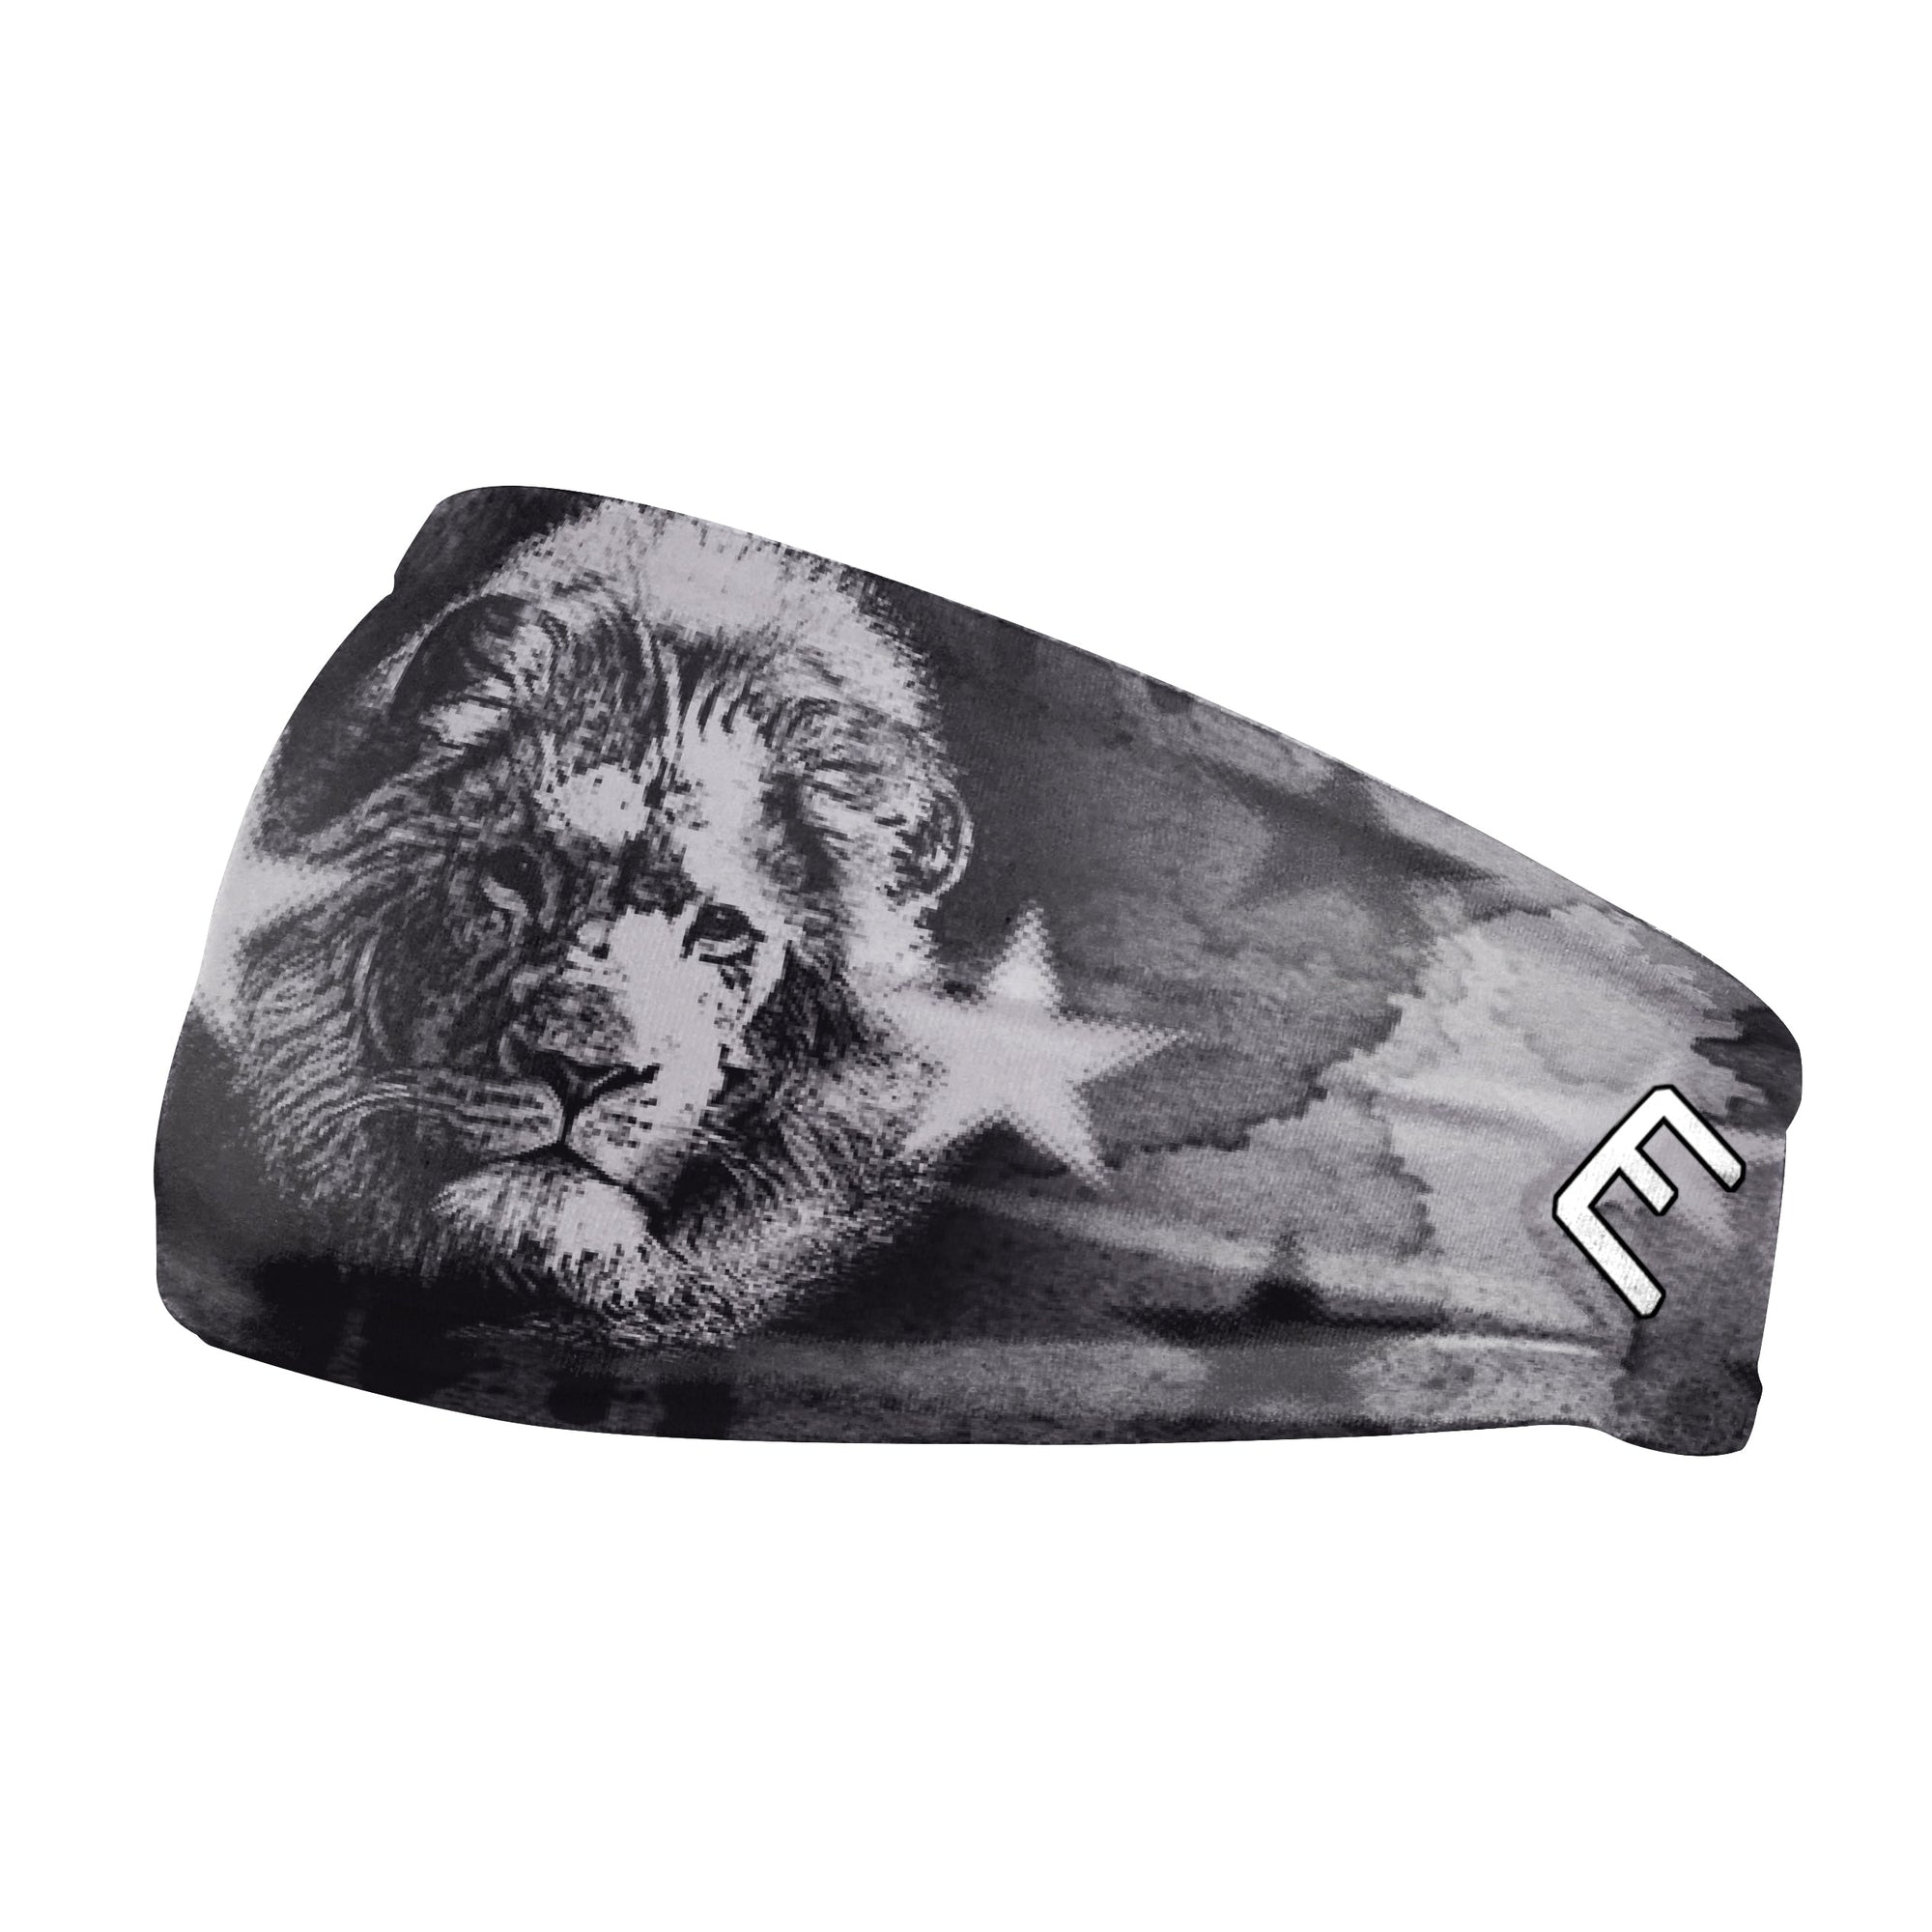 Lion Headband